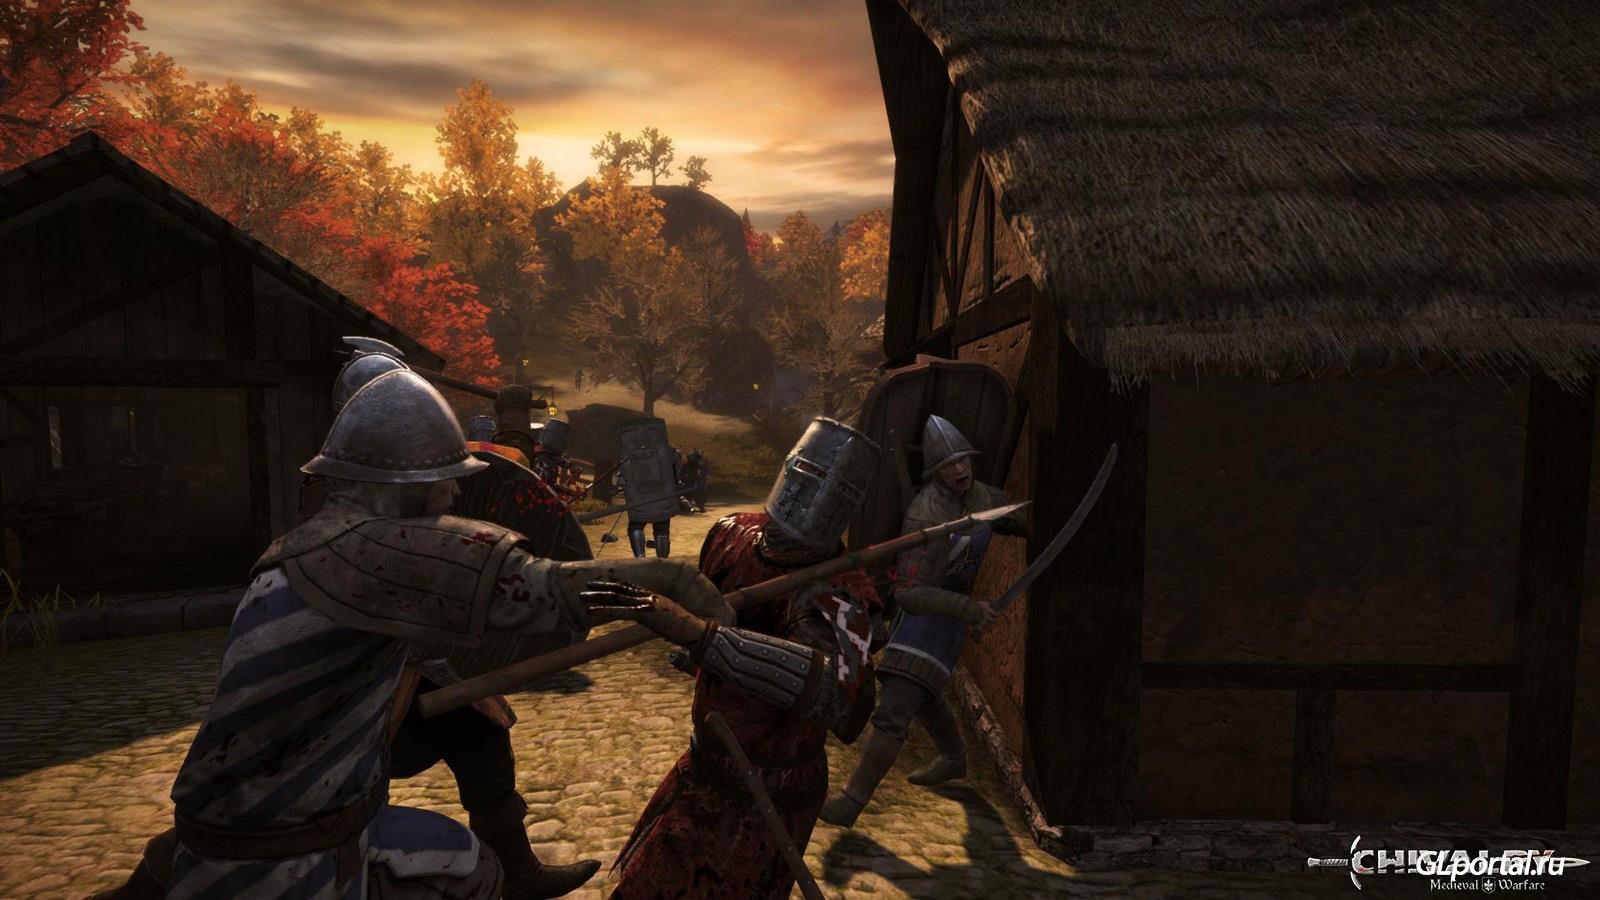 Chivalry Medieval Warfare (2012) PC